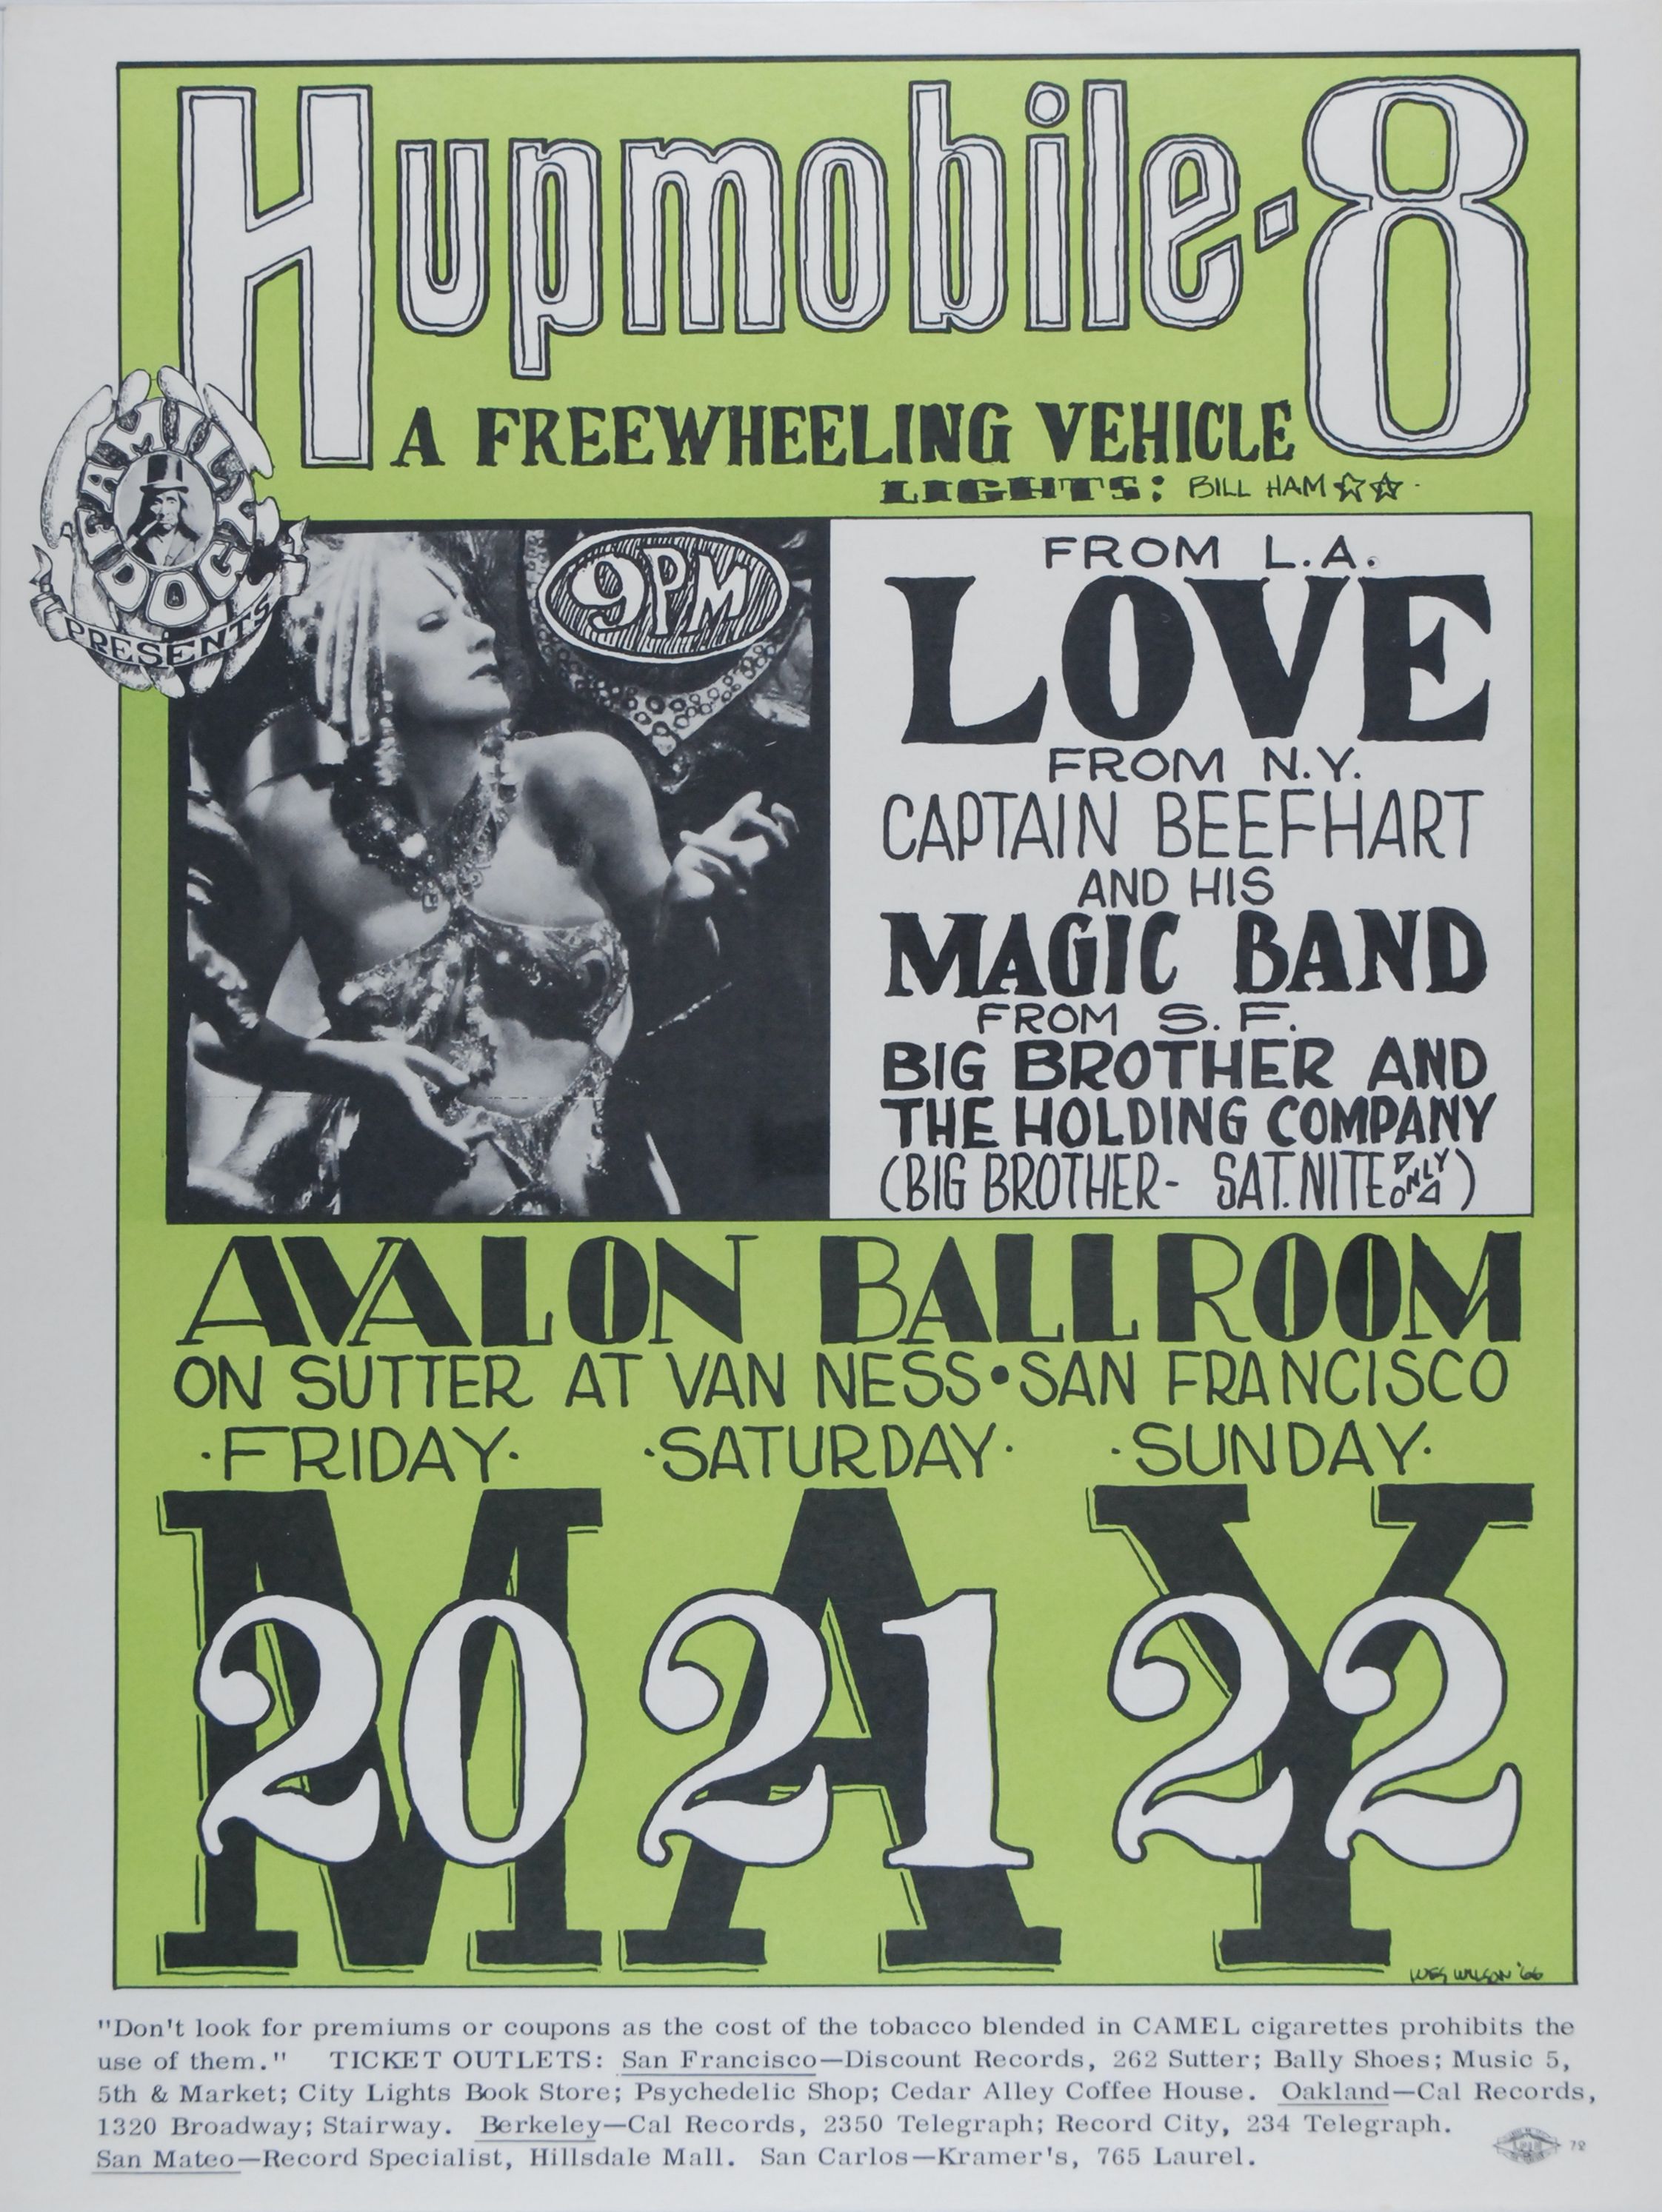 FD-9-OP-1 Concert Poster